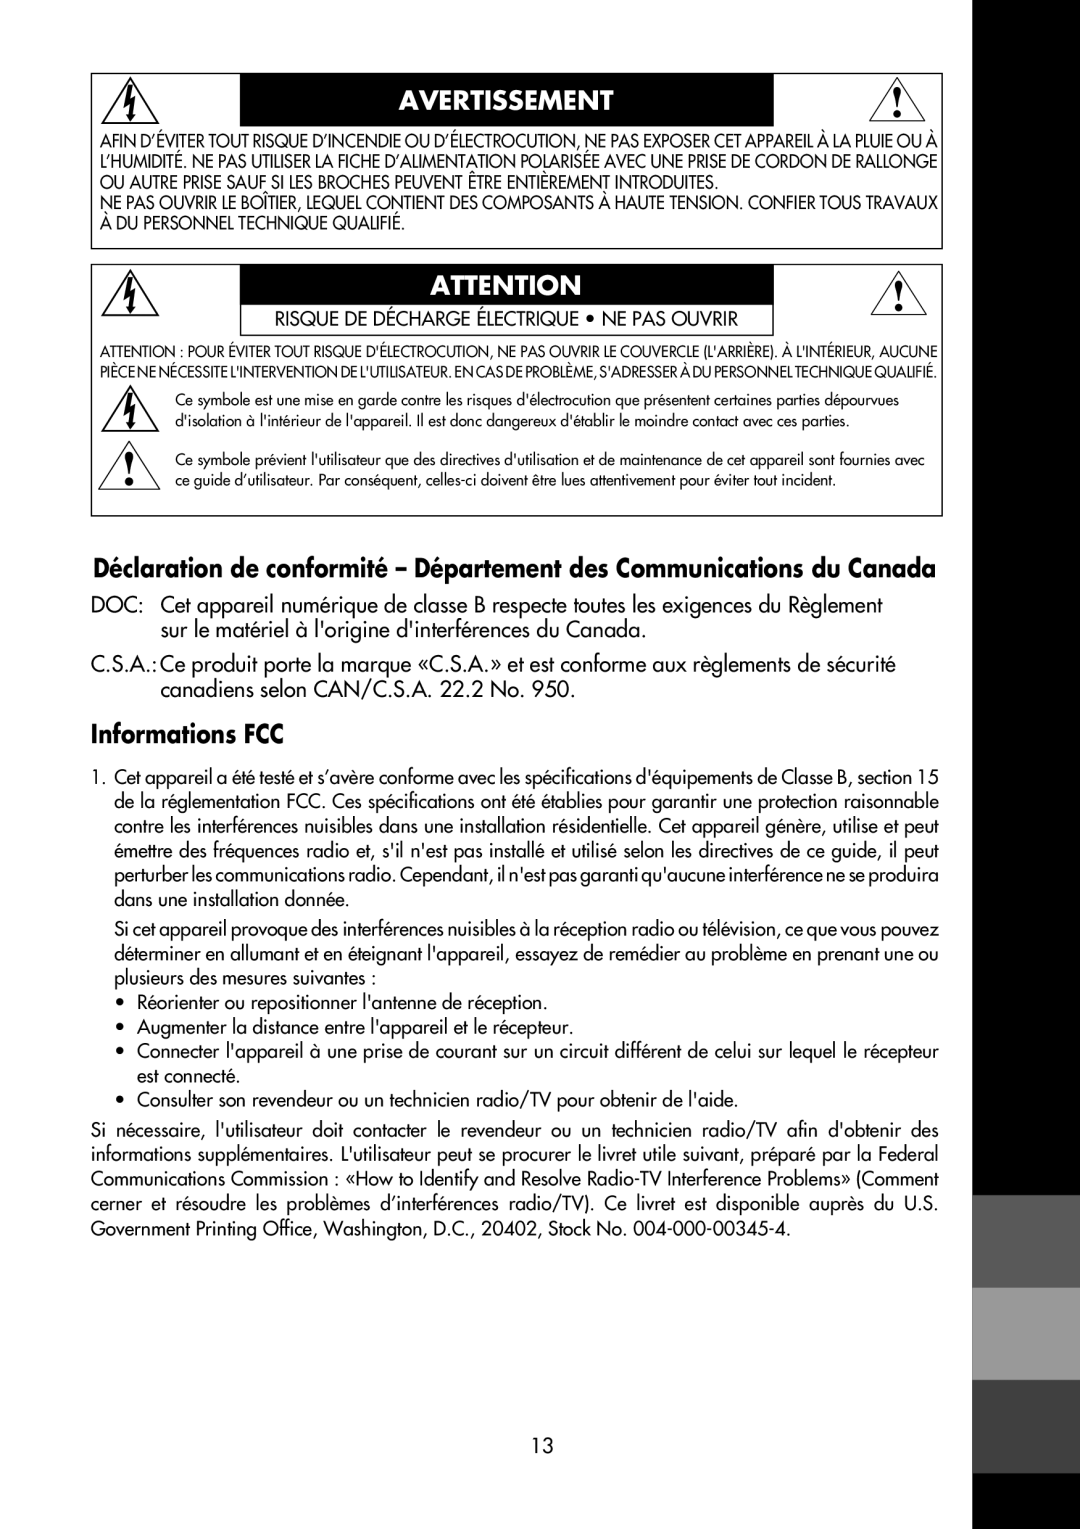 NEC LCD1700M Avertissement, Déclaration de conformité - Département des Communications du Canada, Informations FCC 